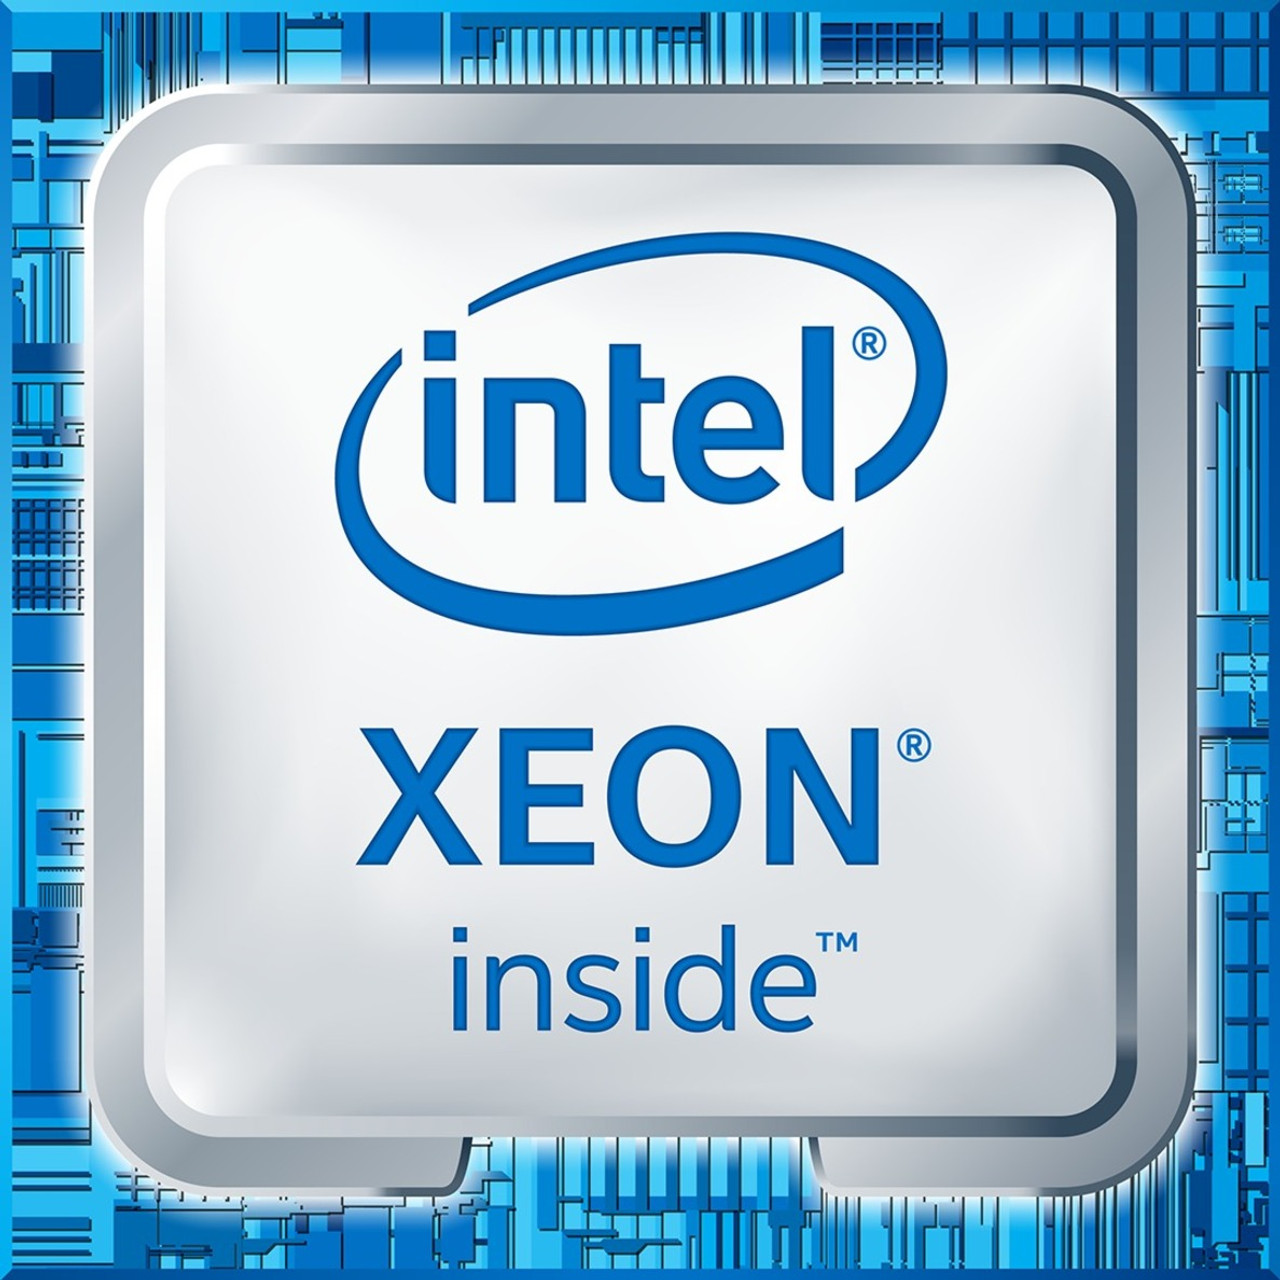 Intel Xeon E5-2600 v4 E5-2699 v4 Docosa-core (22 Core) 2.20 GHz Processor - CM8066002022506